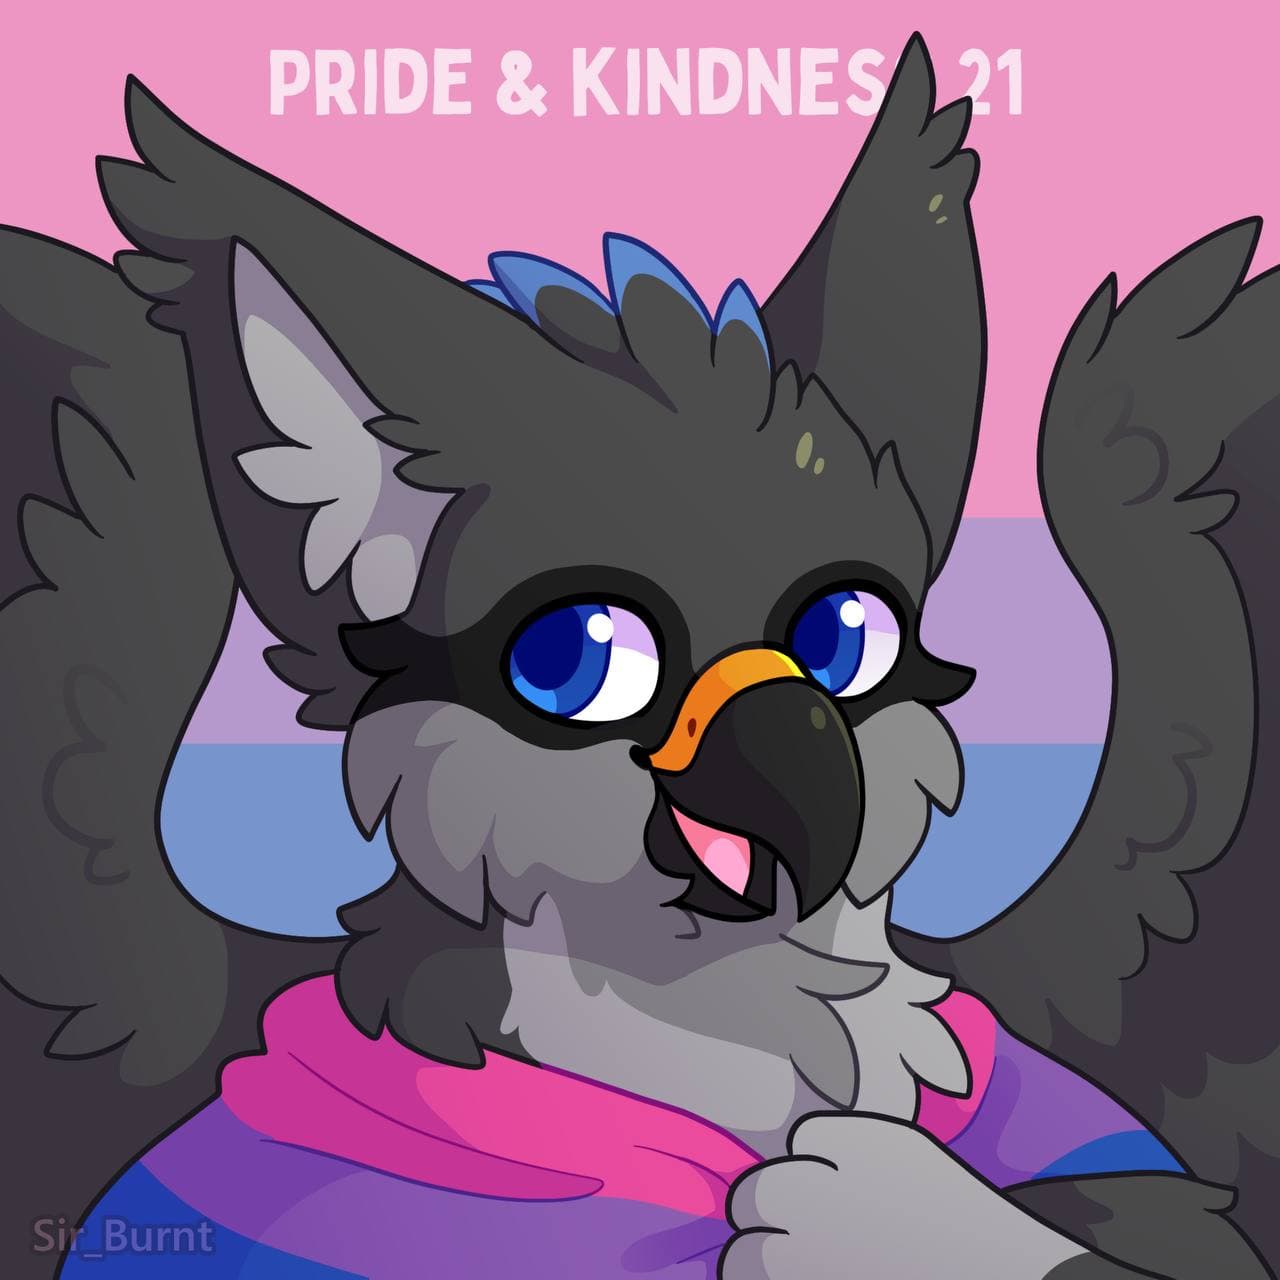 Pride & Kindness 2021